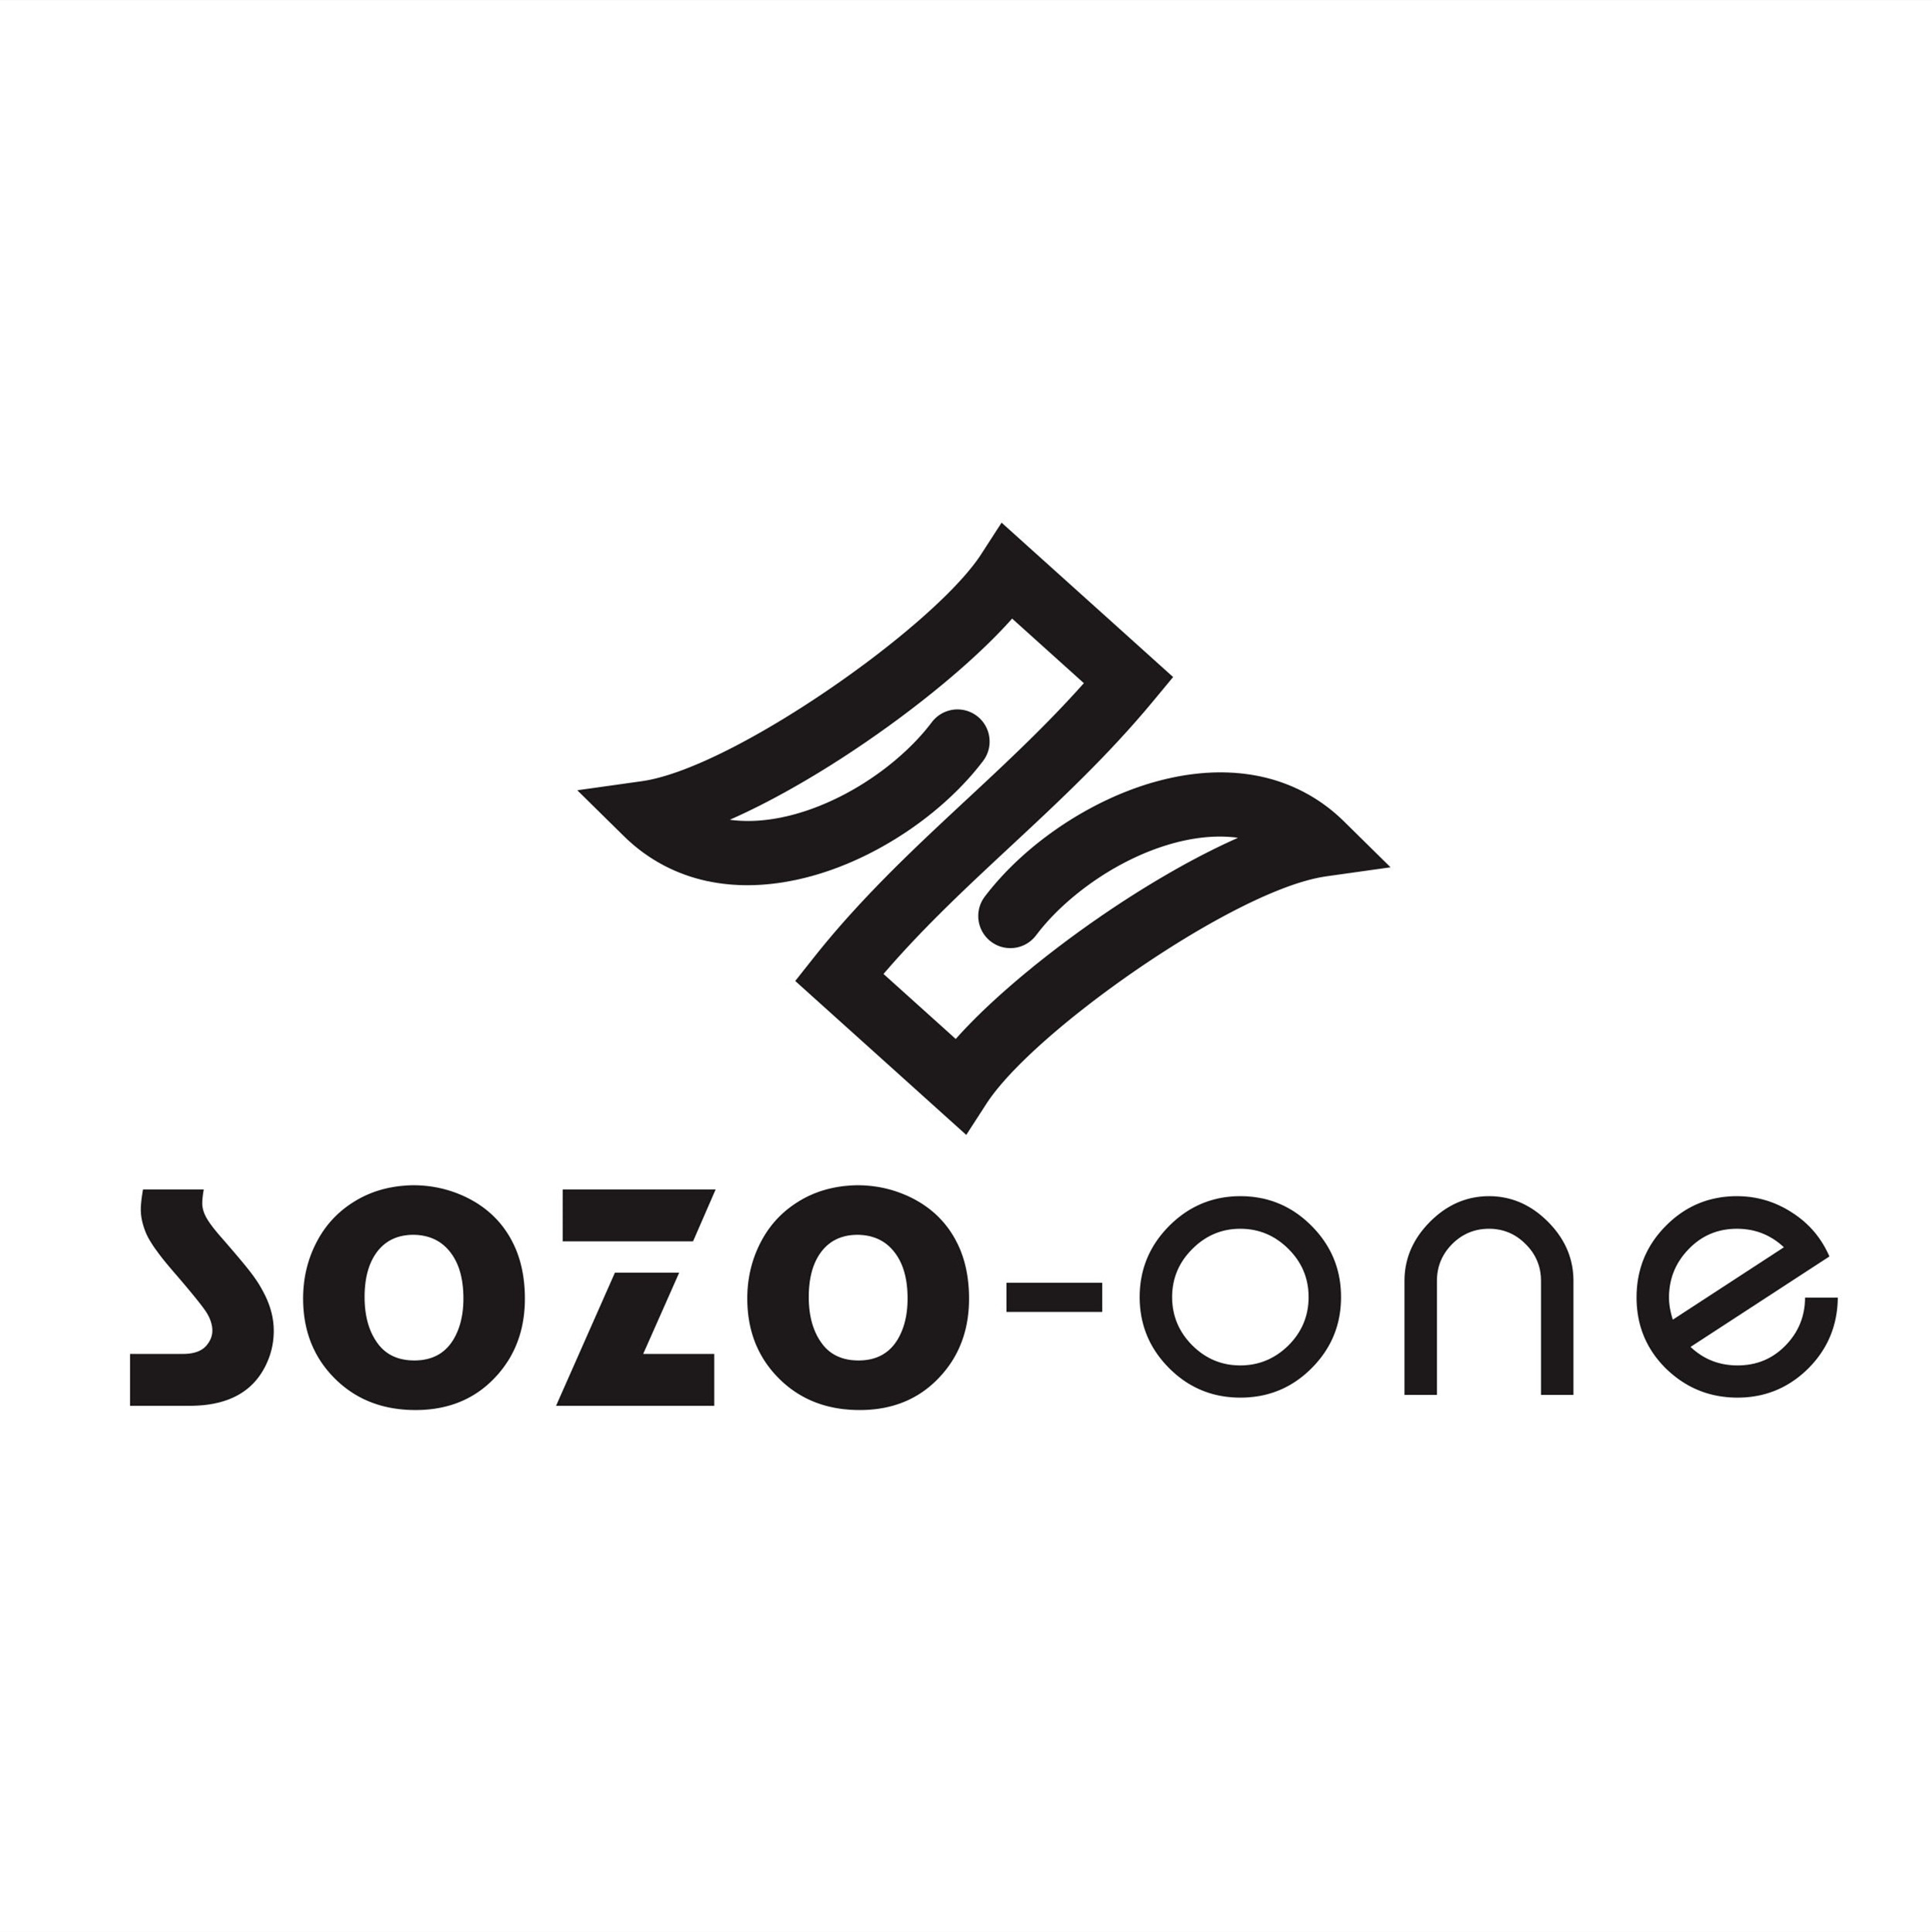 Sozo 2500px (W) by 2500px (H), JPG – Website.jpg